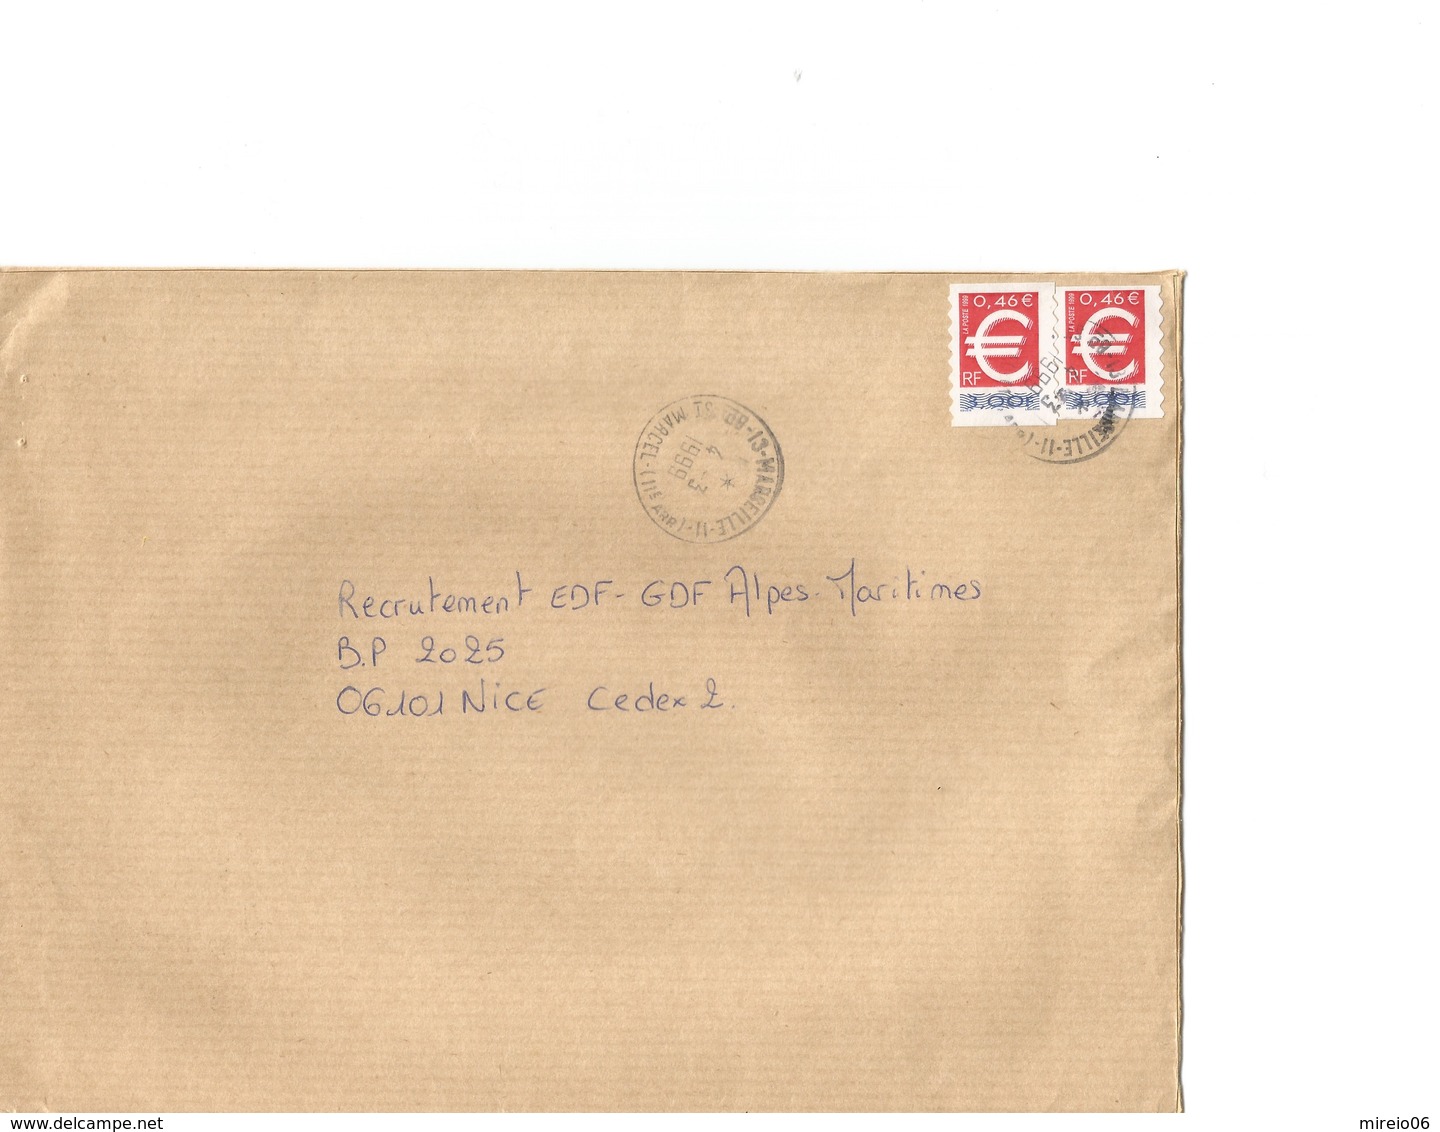 Lettre Avec Variété Du N° 3215, Hauteur Réduite D'environ 2mm Suite Anomalie De Découpe Du Carnet, Tenant à Normal - Lettres & Documents